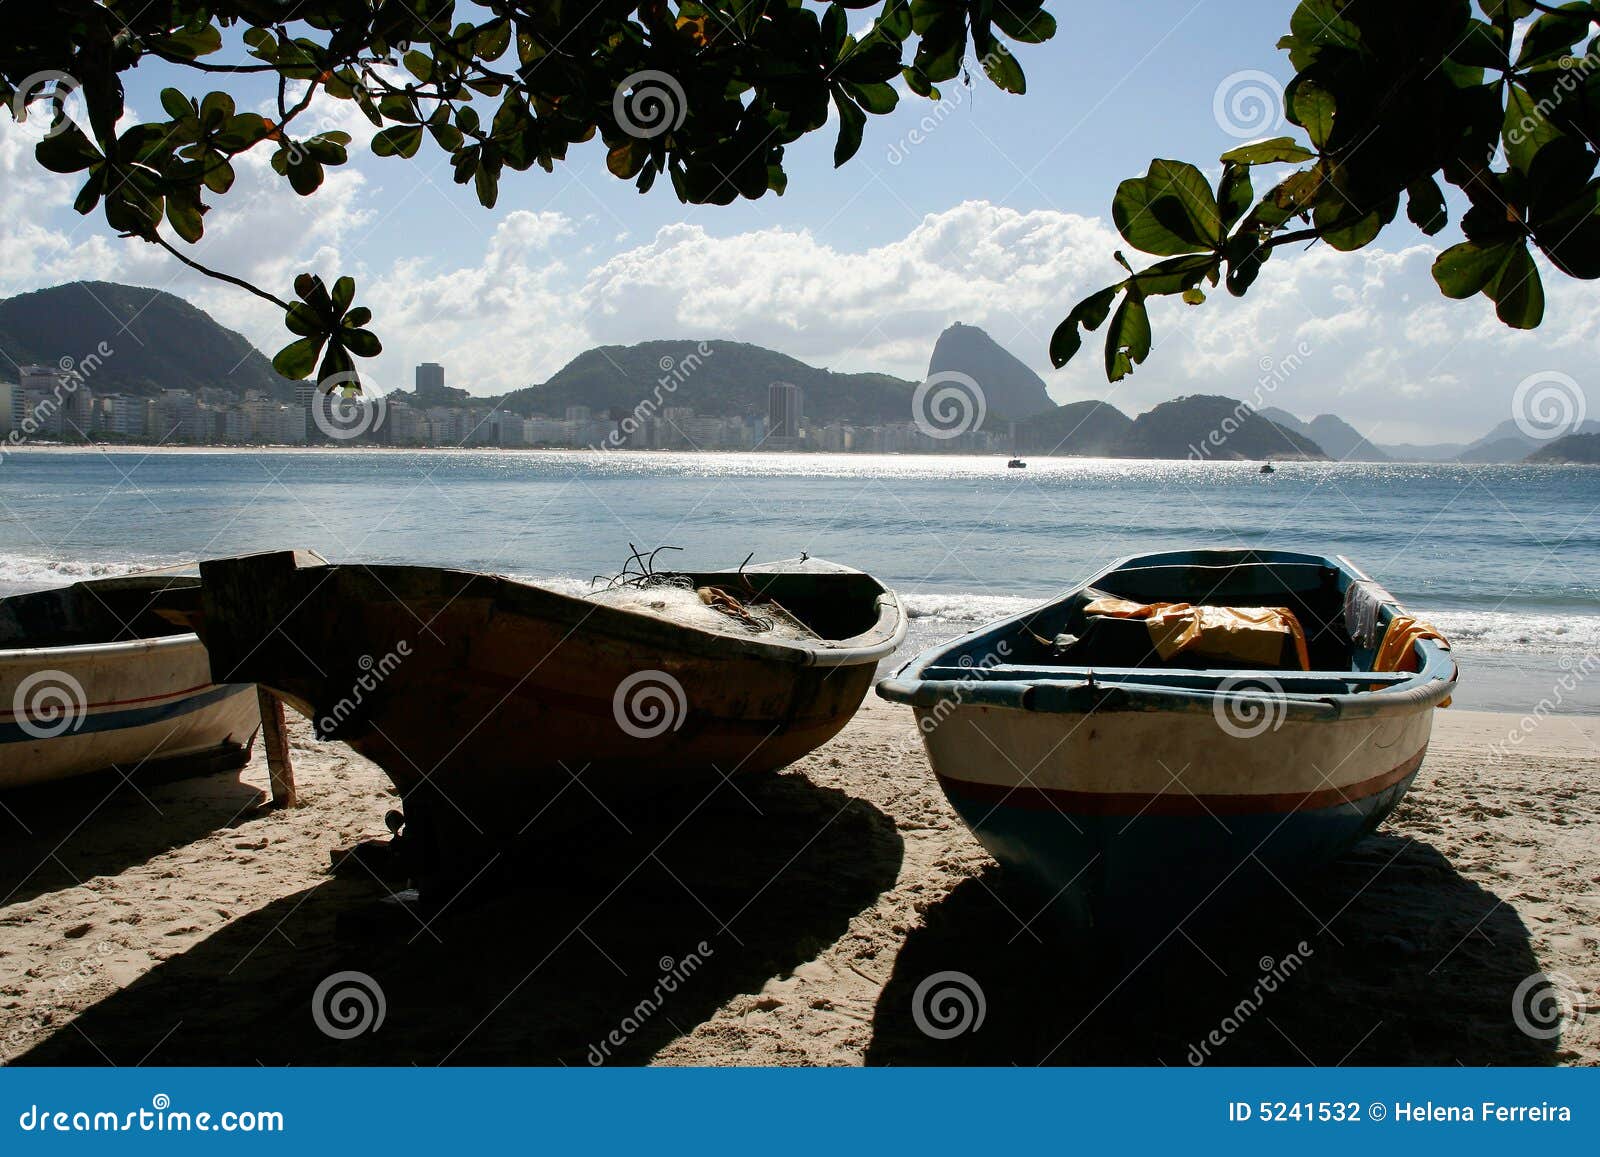 rio, copacabana beach